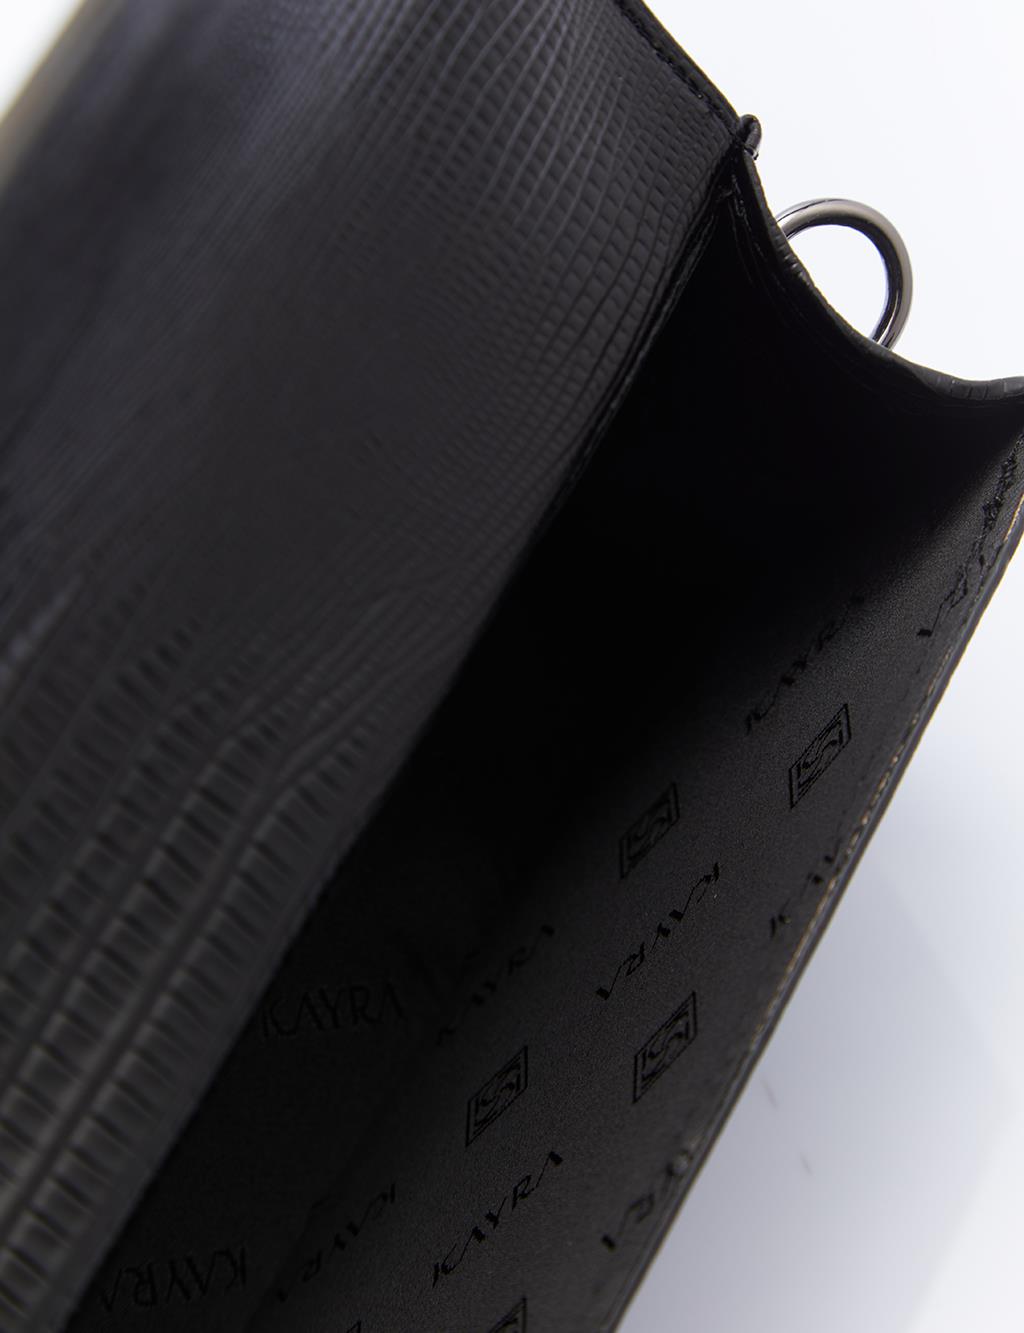  Zincir Askılı Kapaklı Çanta Desenli Siyah 